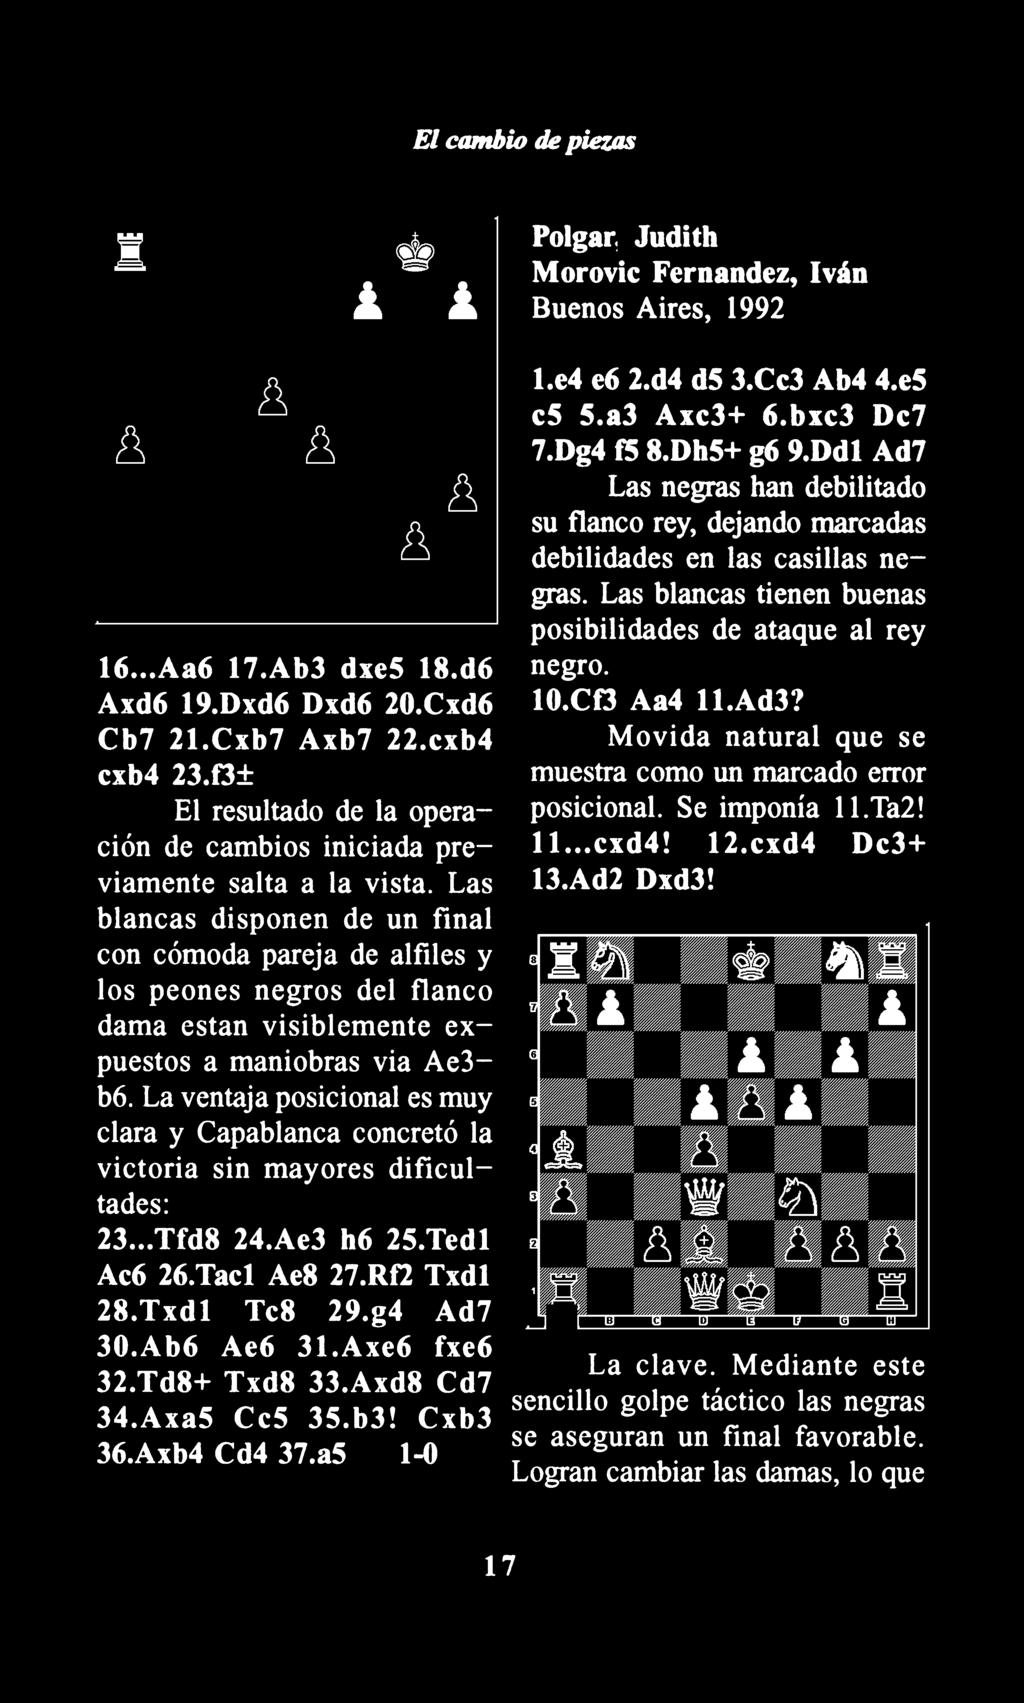 La ventaja posicional es muy clara y Capablanca concretó la victoria sin mayores dificultades: 23... Tfd8 24.Ae3 h6 2S.Tedl Ac6 26.Tacl Ae8 27.Rf2 Txdl 28.Txdl Tc8 29.g4 Ad7 30.Ab6 Ae6 31.